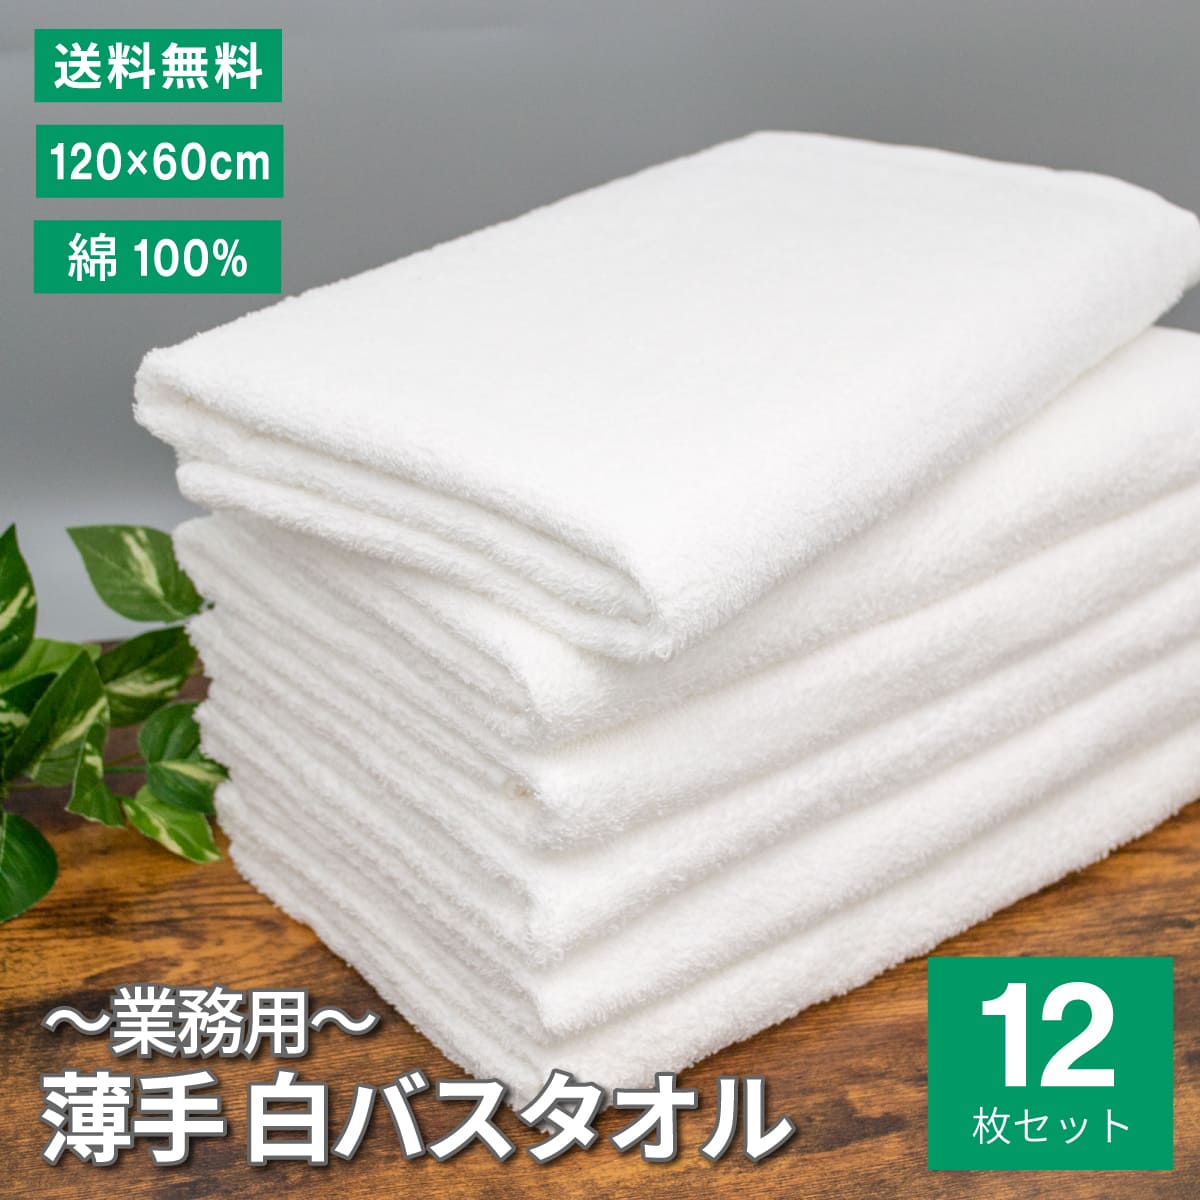 白バスタオル まとめ買い 120×60cm 綿100% 12枚 業務用 介護 白 薄手 シンプル タオル 速乾